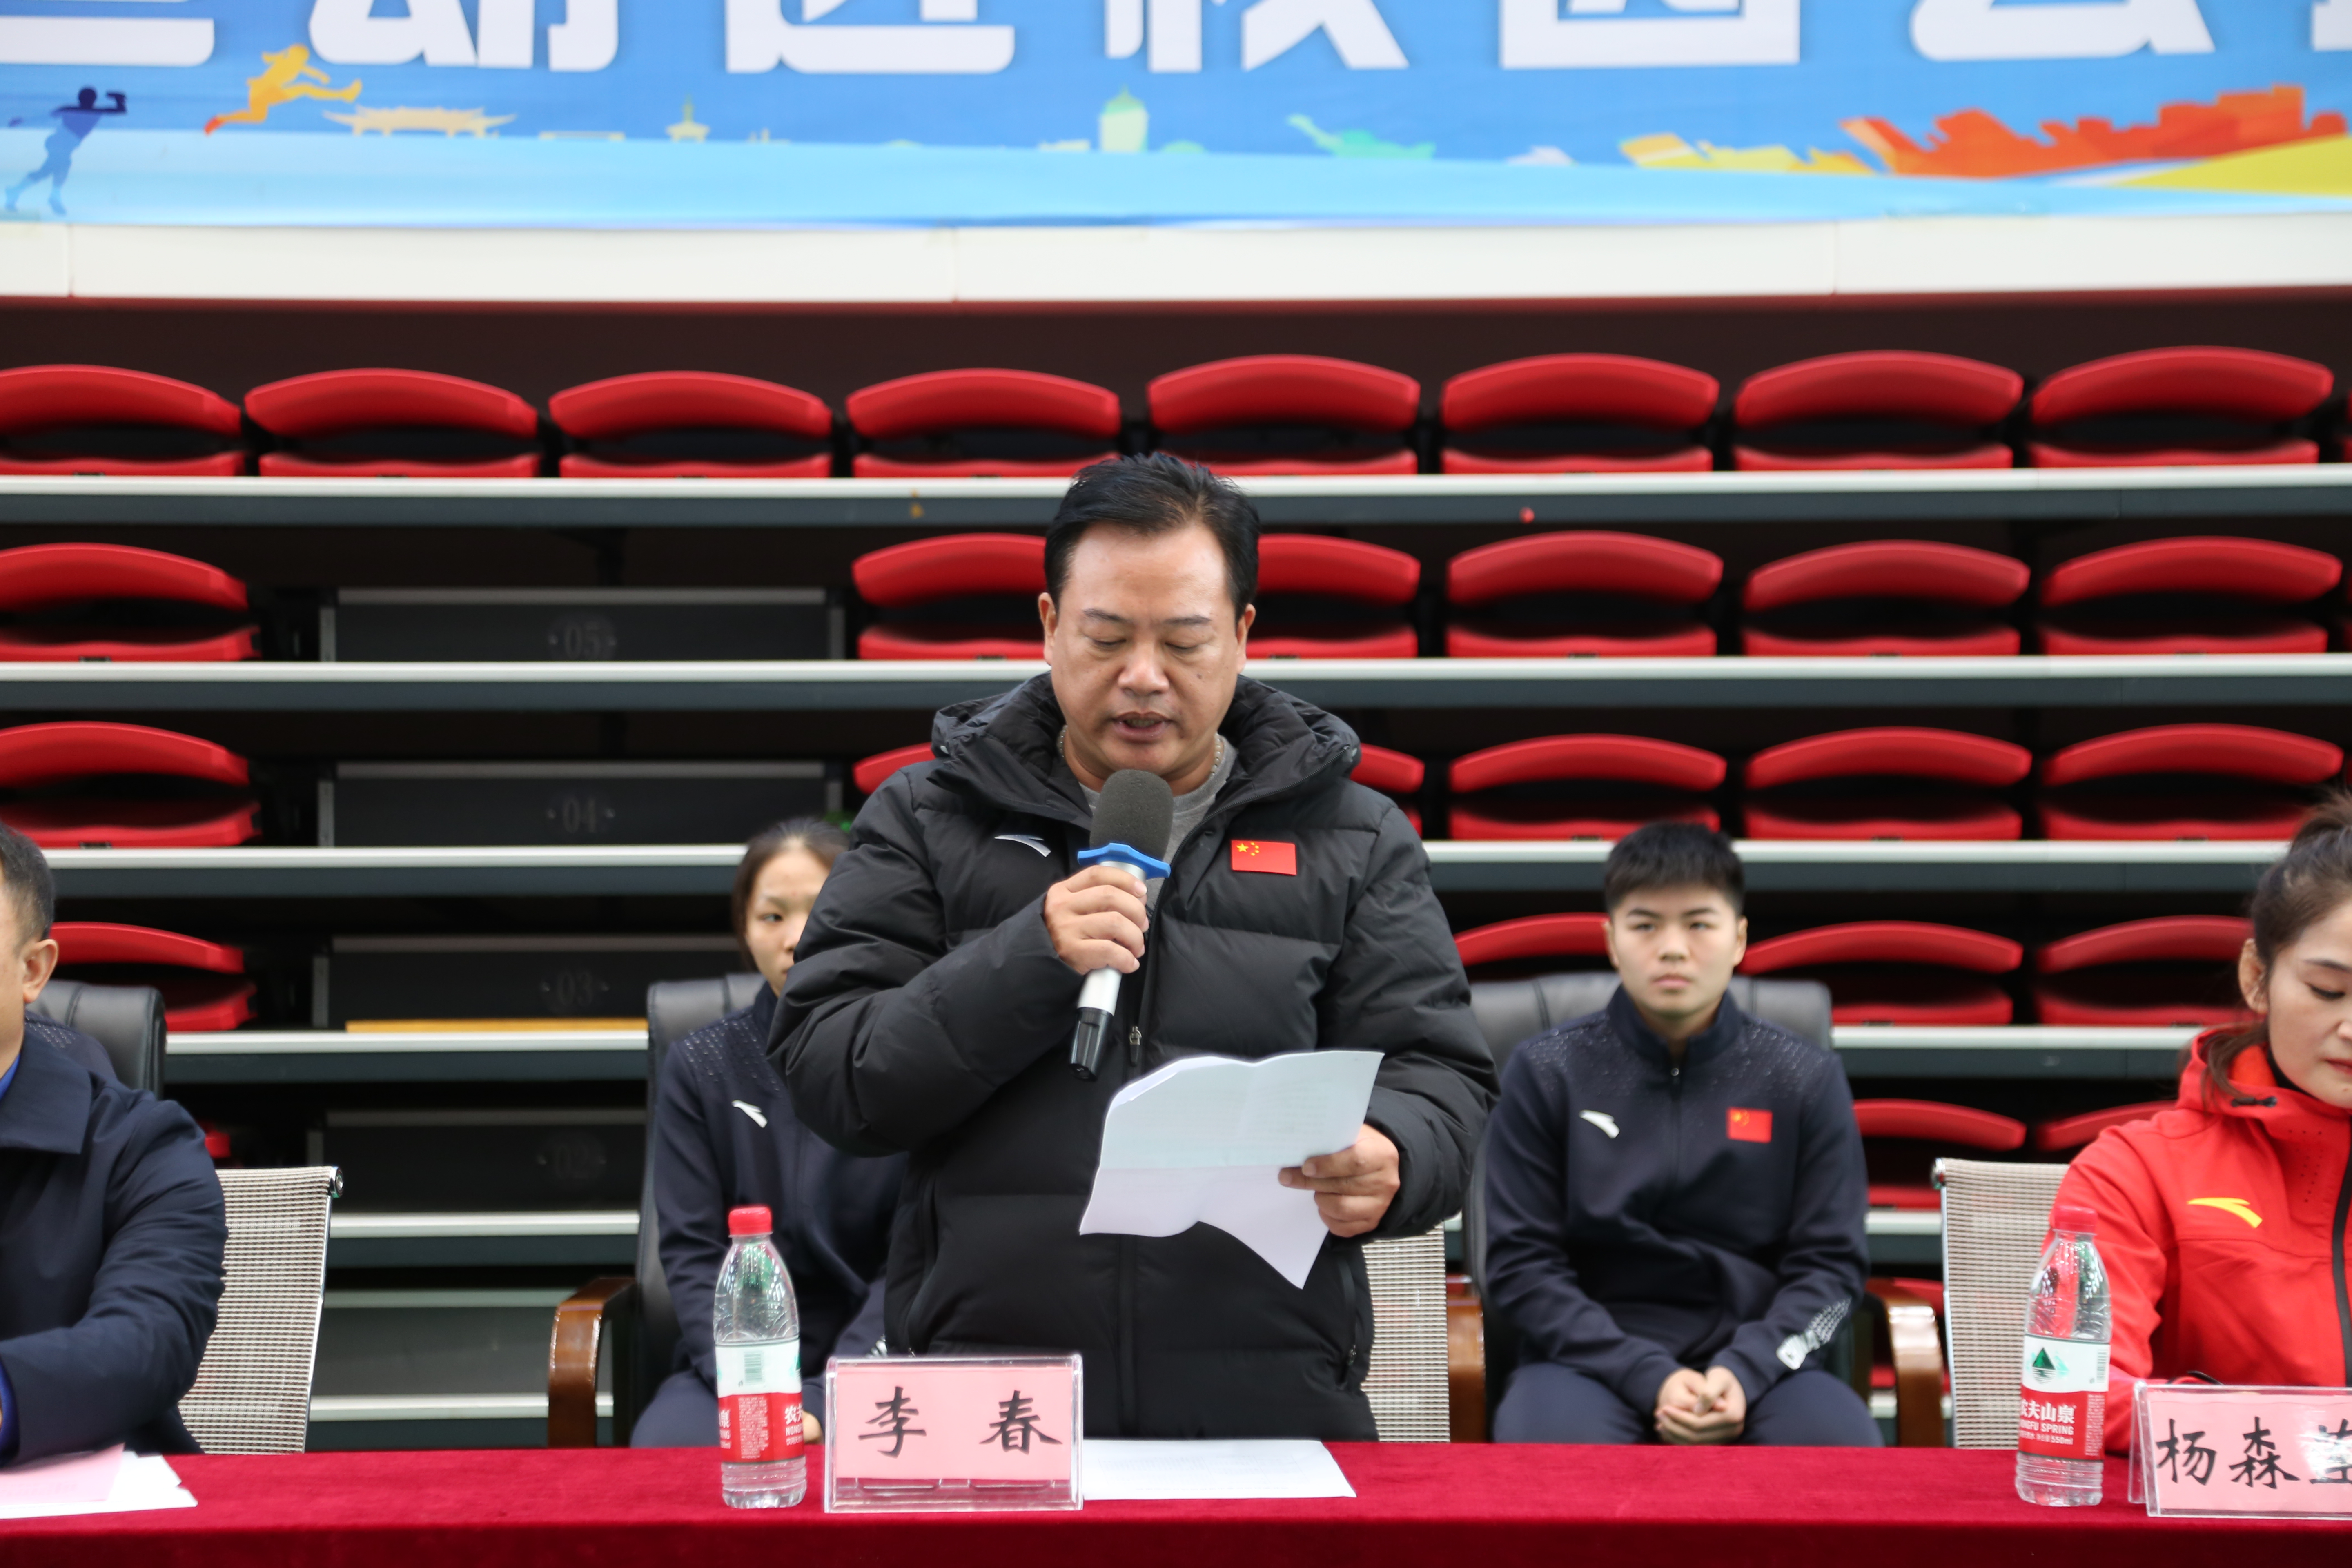 广西重竞技发展中心副主任李春发言